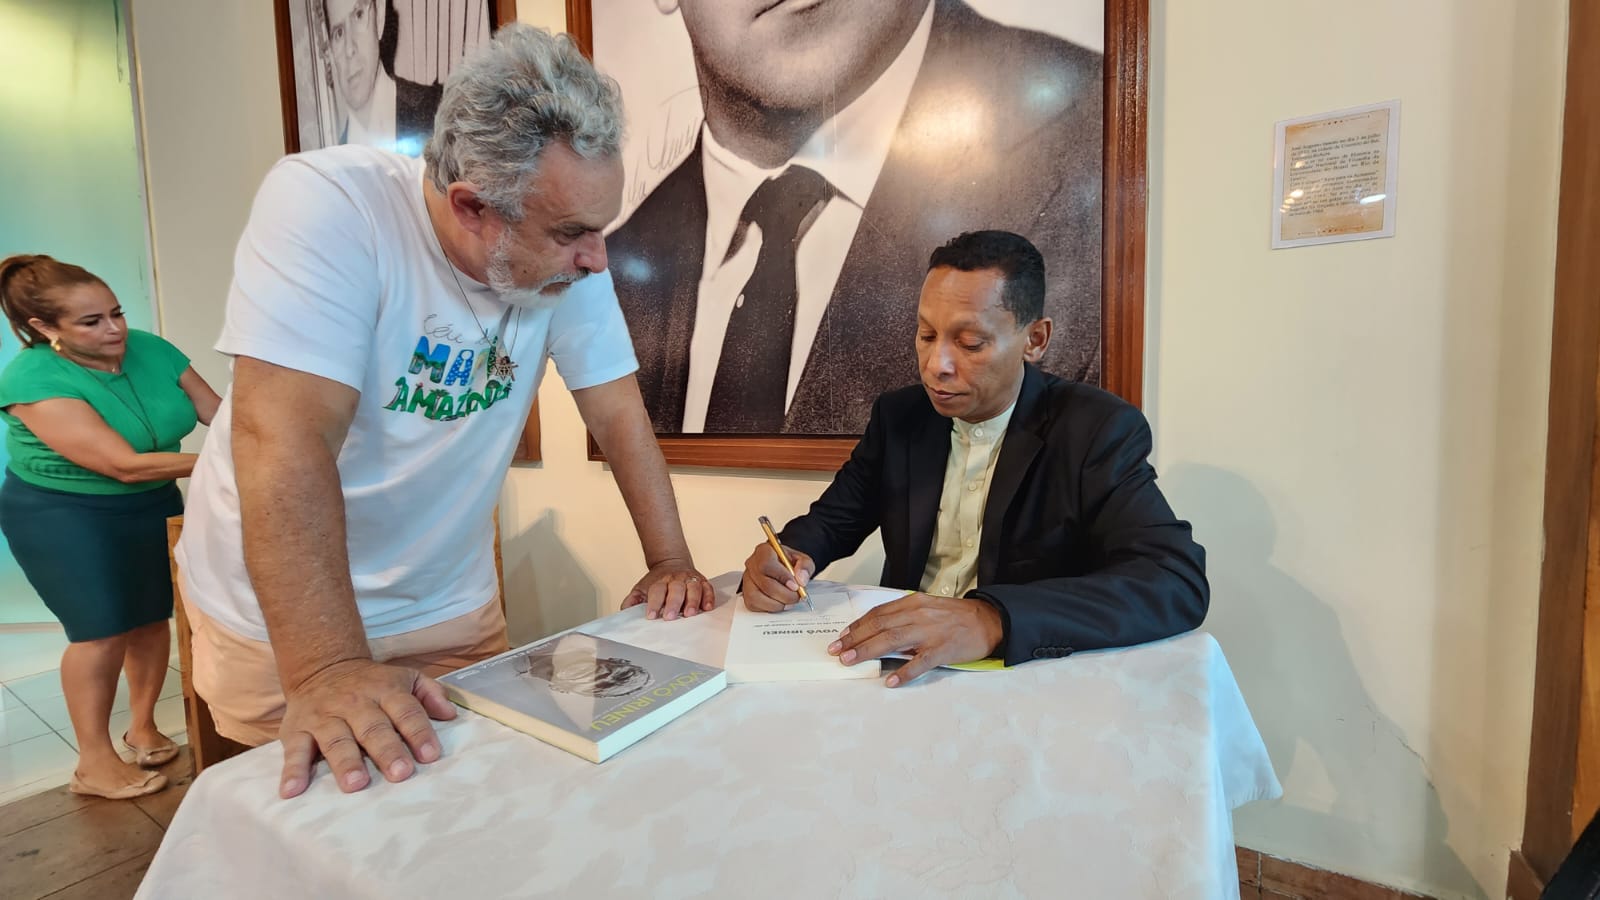 Jornalista acreano lança livro em Porto Velho exaltando a Doutrina do Daime: “Vovô Irineu” - News Rondônia